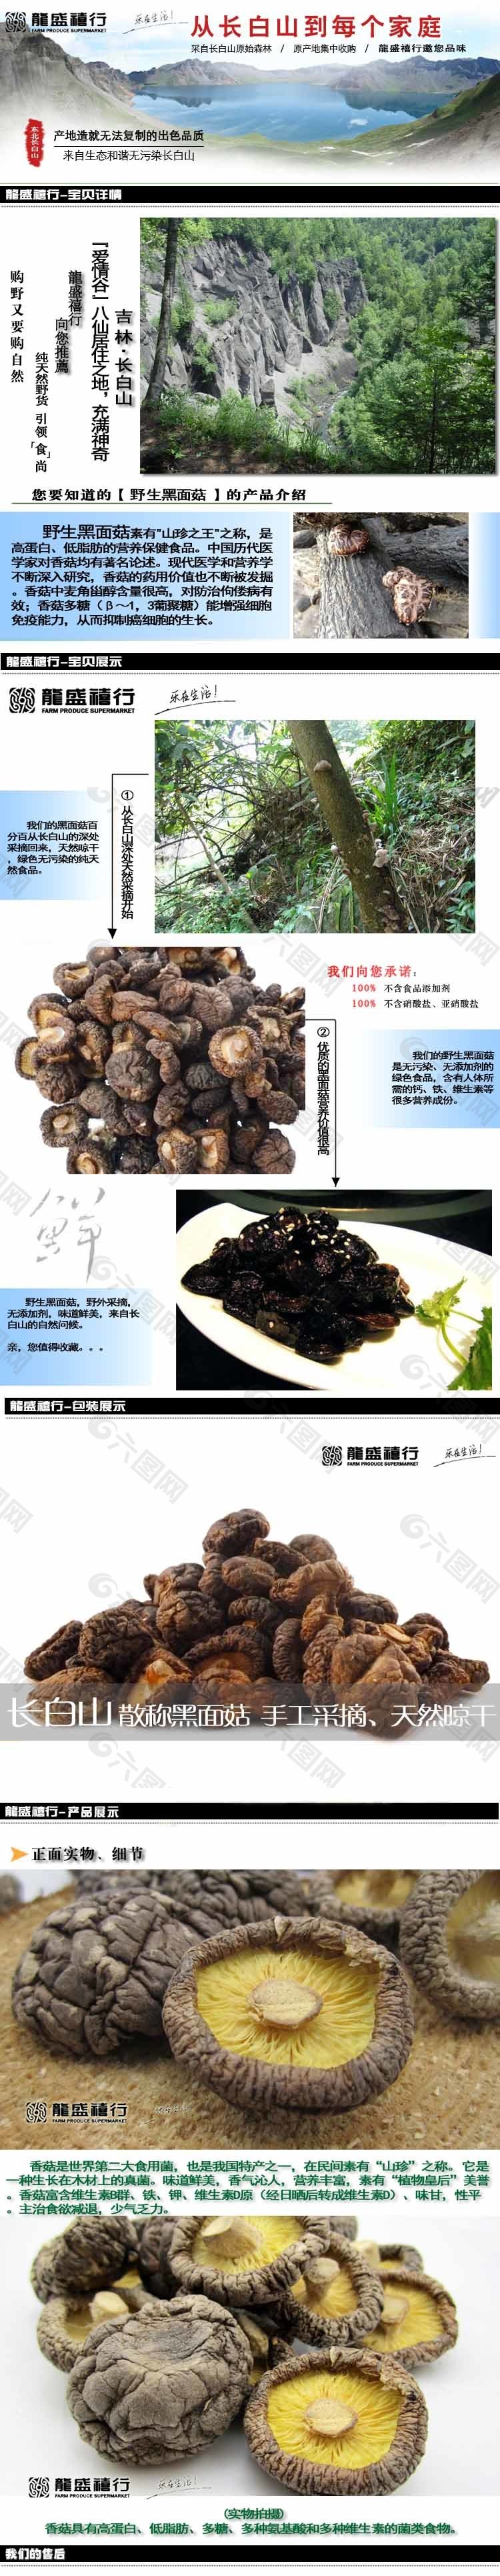 淘宝黑面菇农产品描述